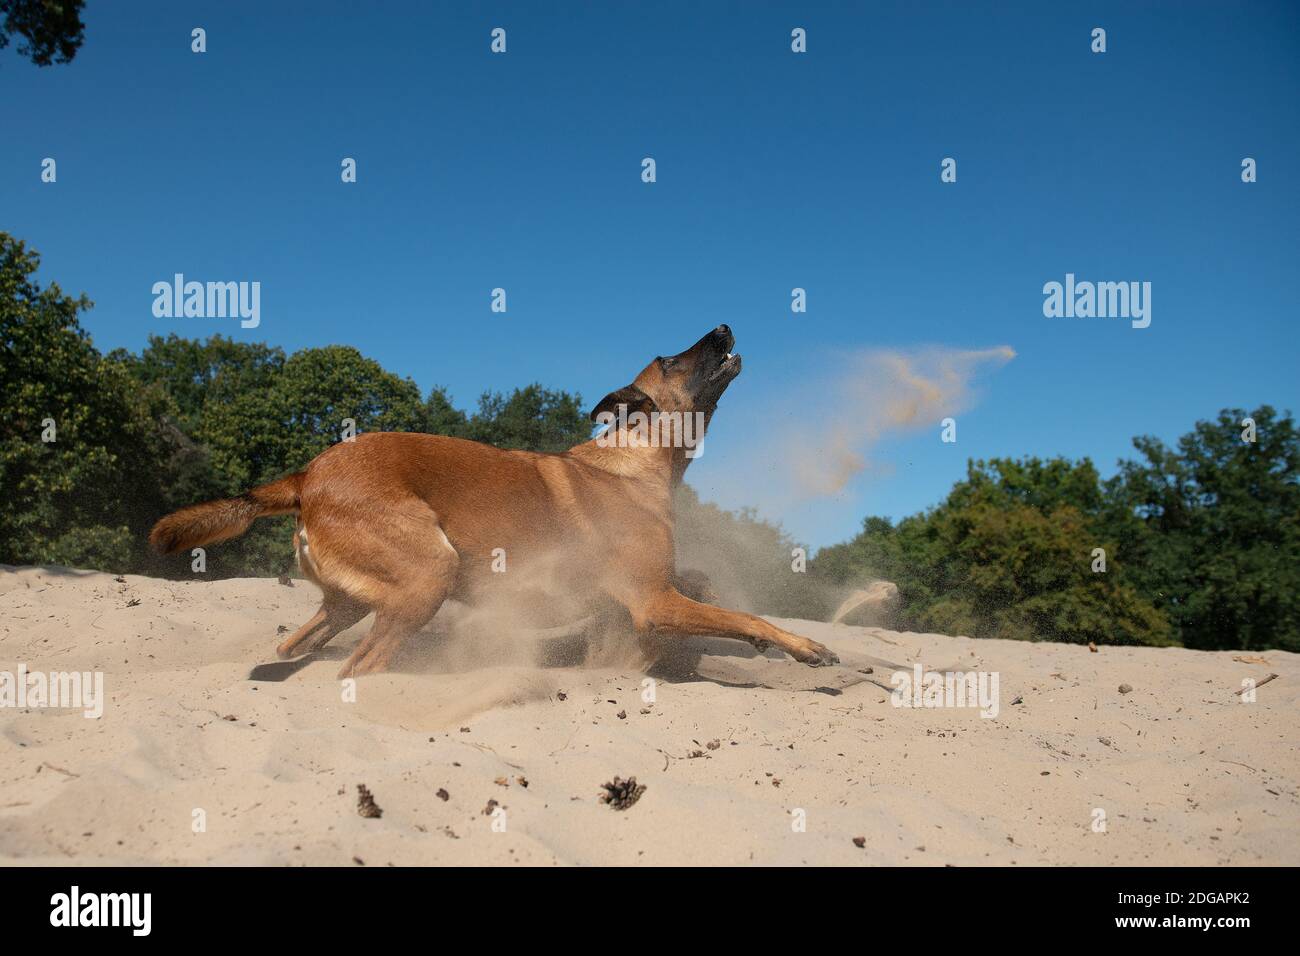 Pastore belga visto dal lato pronto a saltare o. cattura il suo giocattolo in dune di sabbia in una giornata di sole con cielo limpido Foto Stock